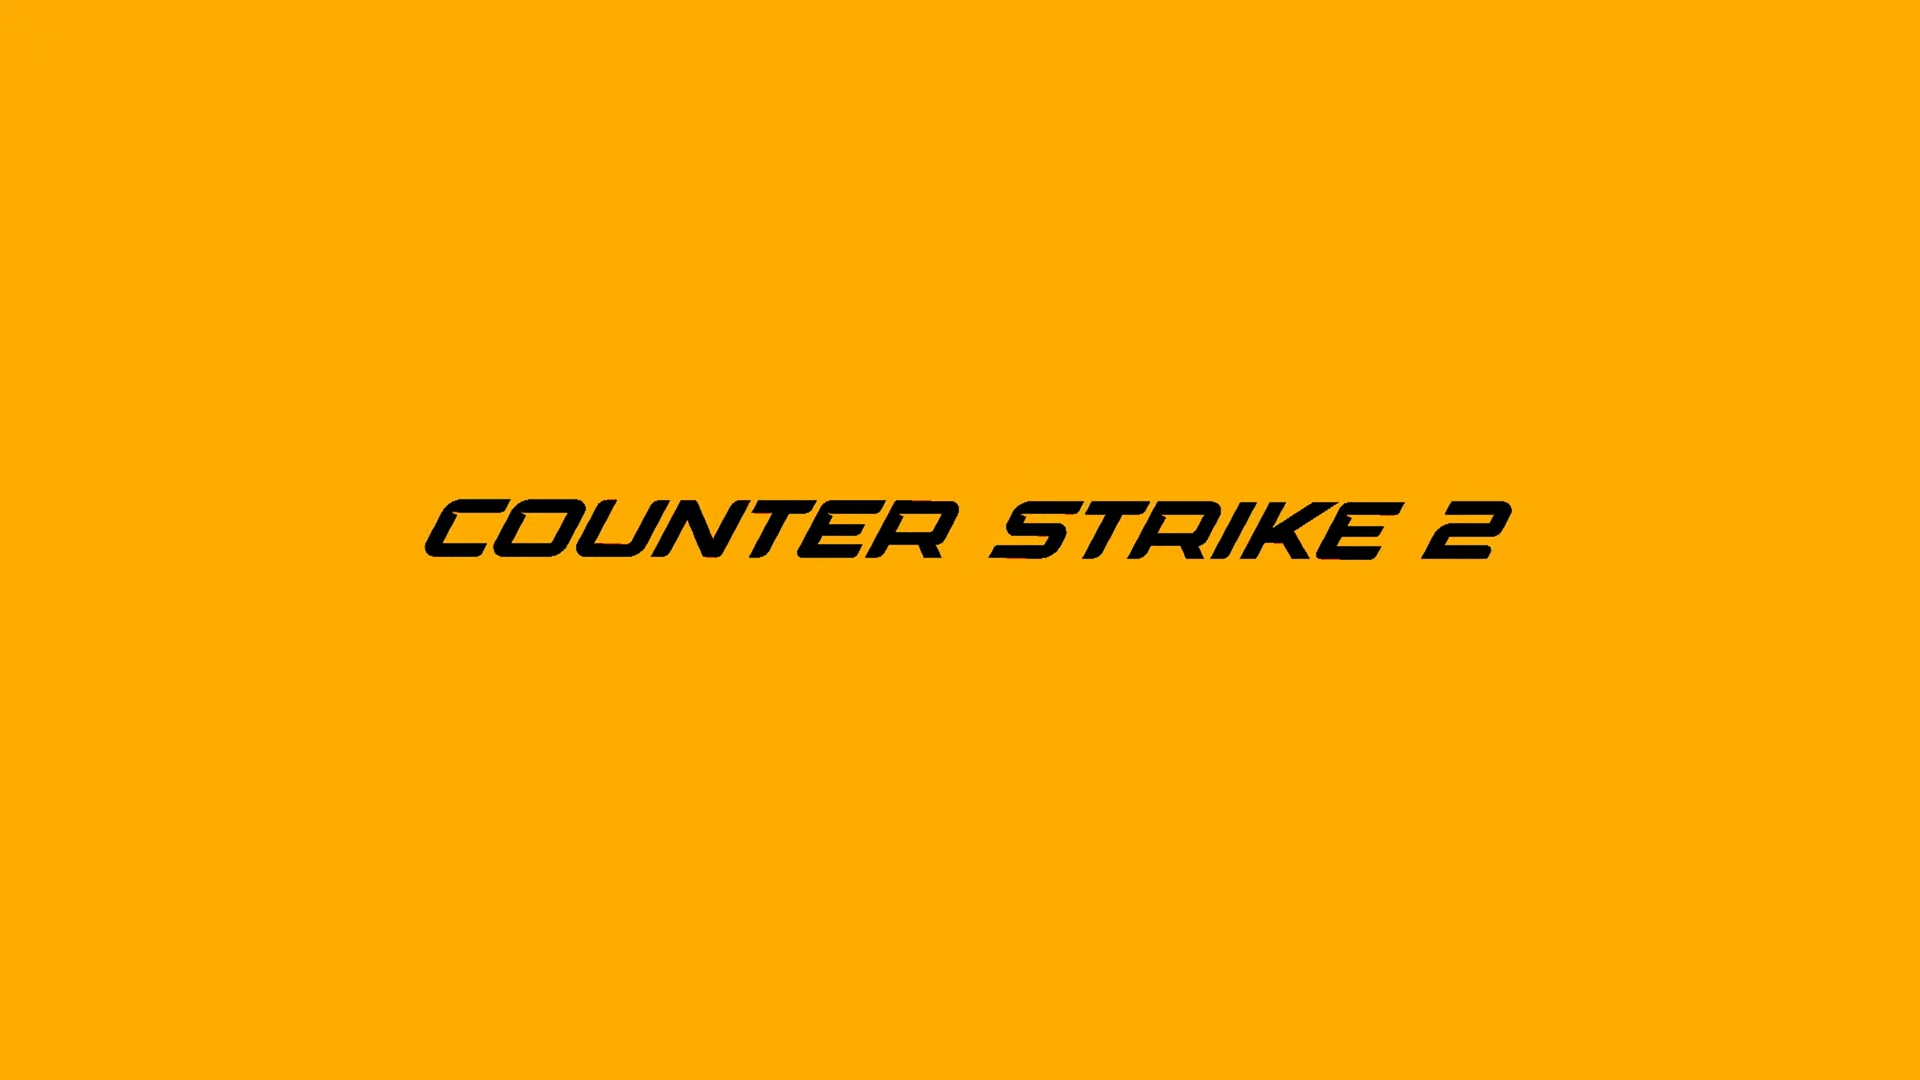 Finalmente conocemos los primeros detalles sobre Counter-Strike 2, incluyendo cuándo sale y cuáles serían algunos de sus mapas.